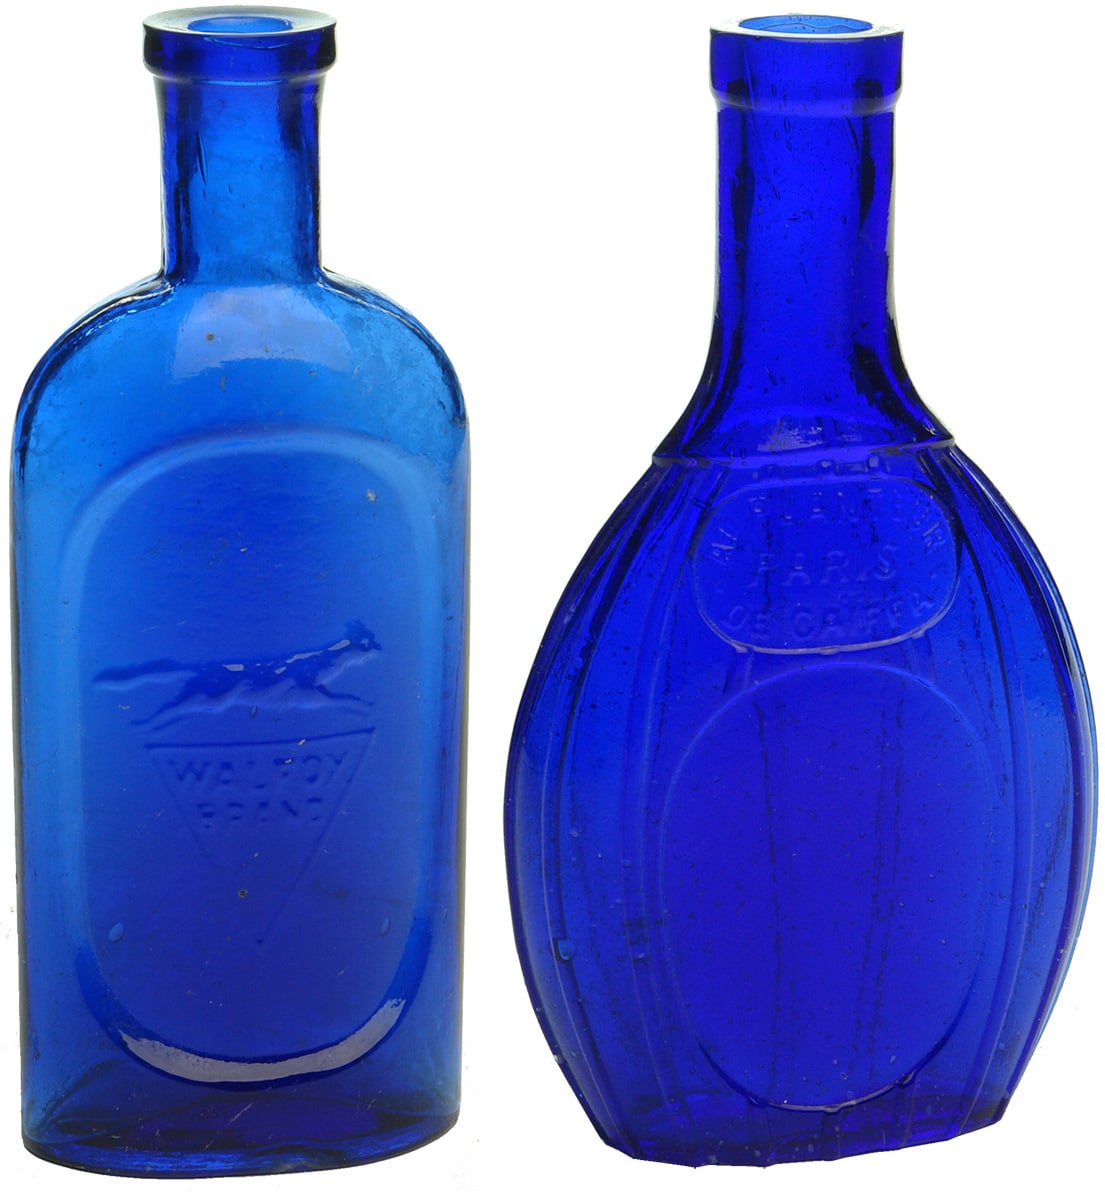 Antique Cobalt Blue Bottles